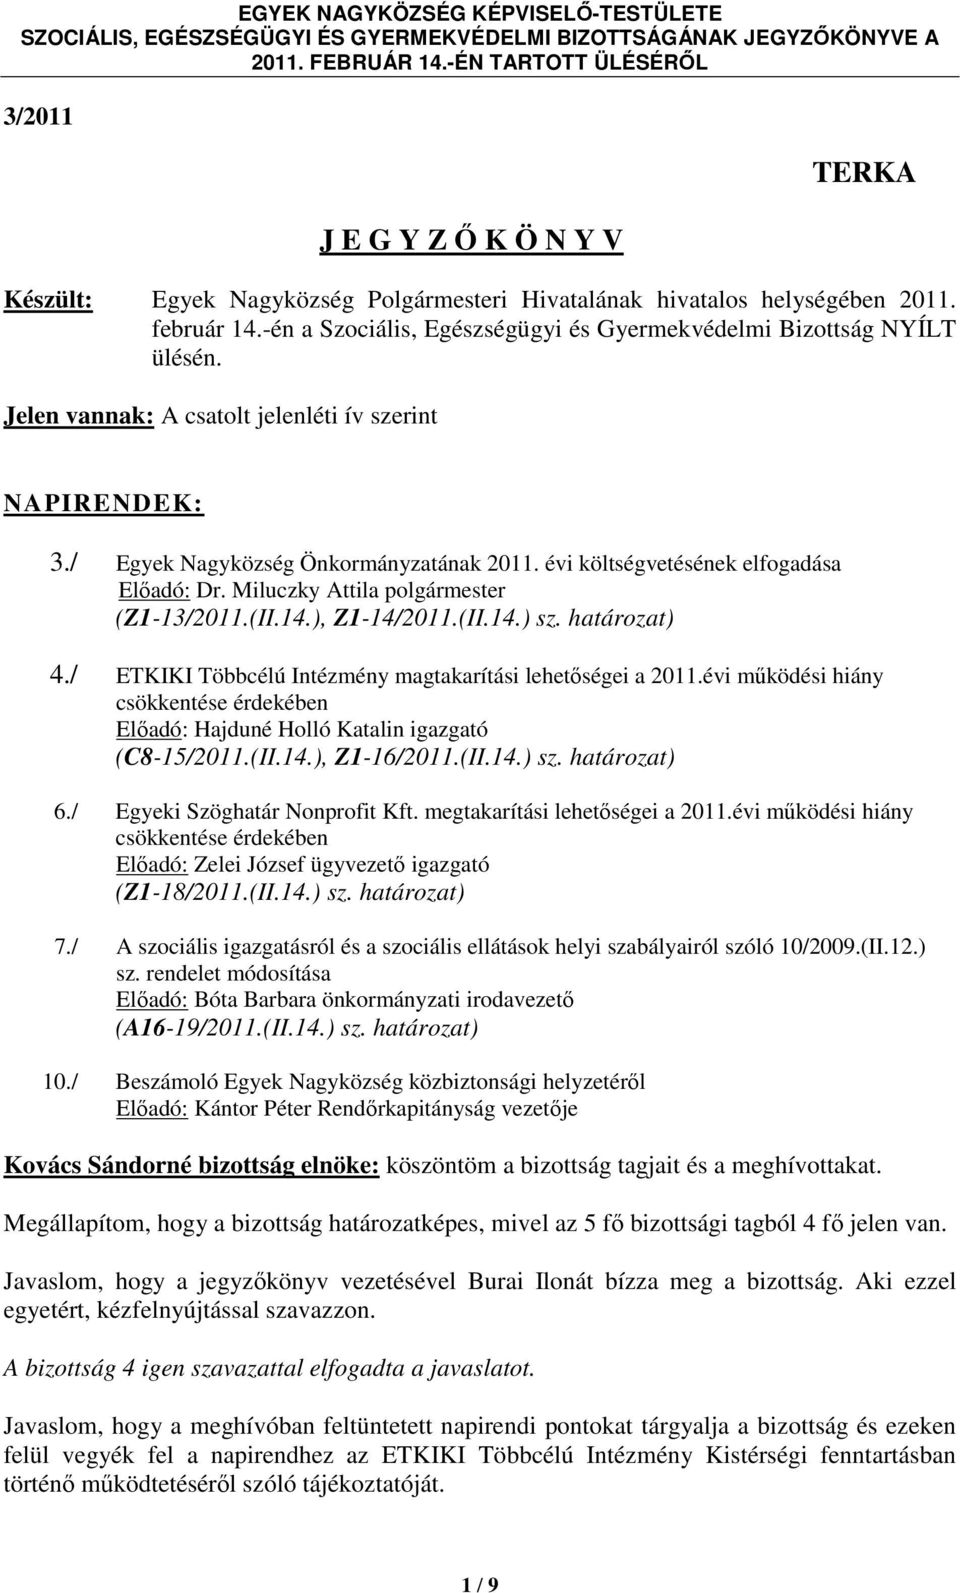 ), Z1-14/2011.(II.14.) sz. határozat) 4./ ETKIKI Többcélú Intézmény magtakarítási lehetőségei a 2011.évi működési hiány csökkentése érdekében Előadó: Hajduné Holló Katalin igazgató (C8-15/2011.(II.14.), Z1-16/2011.